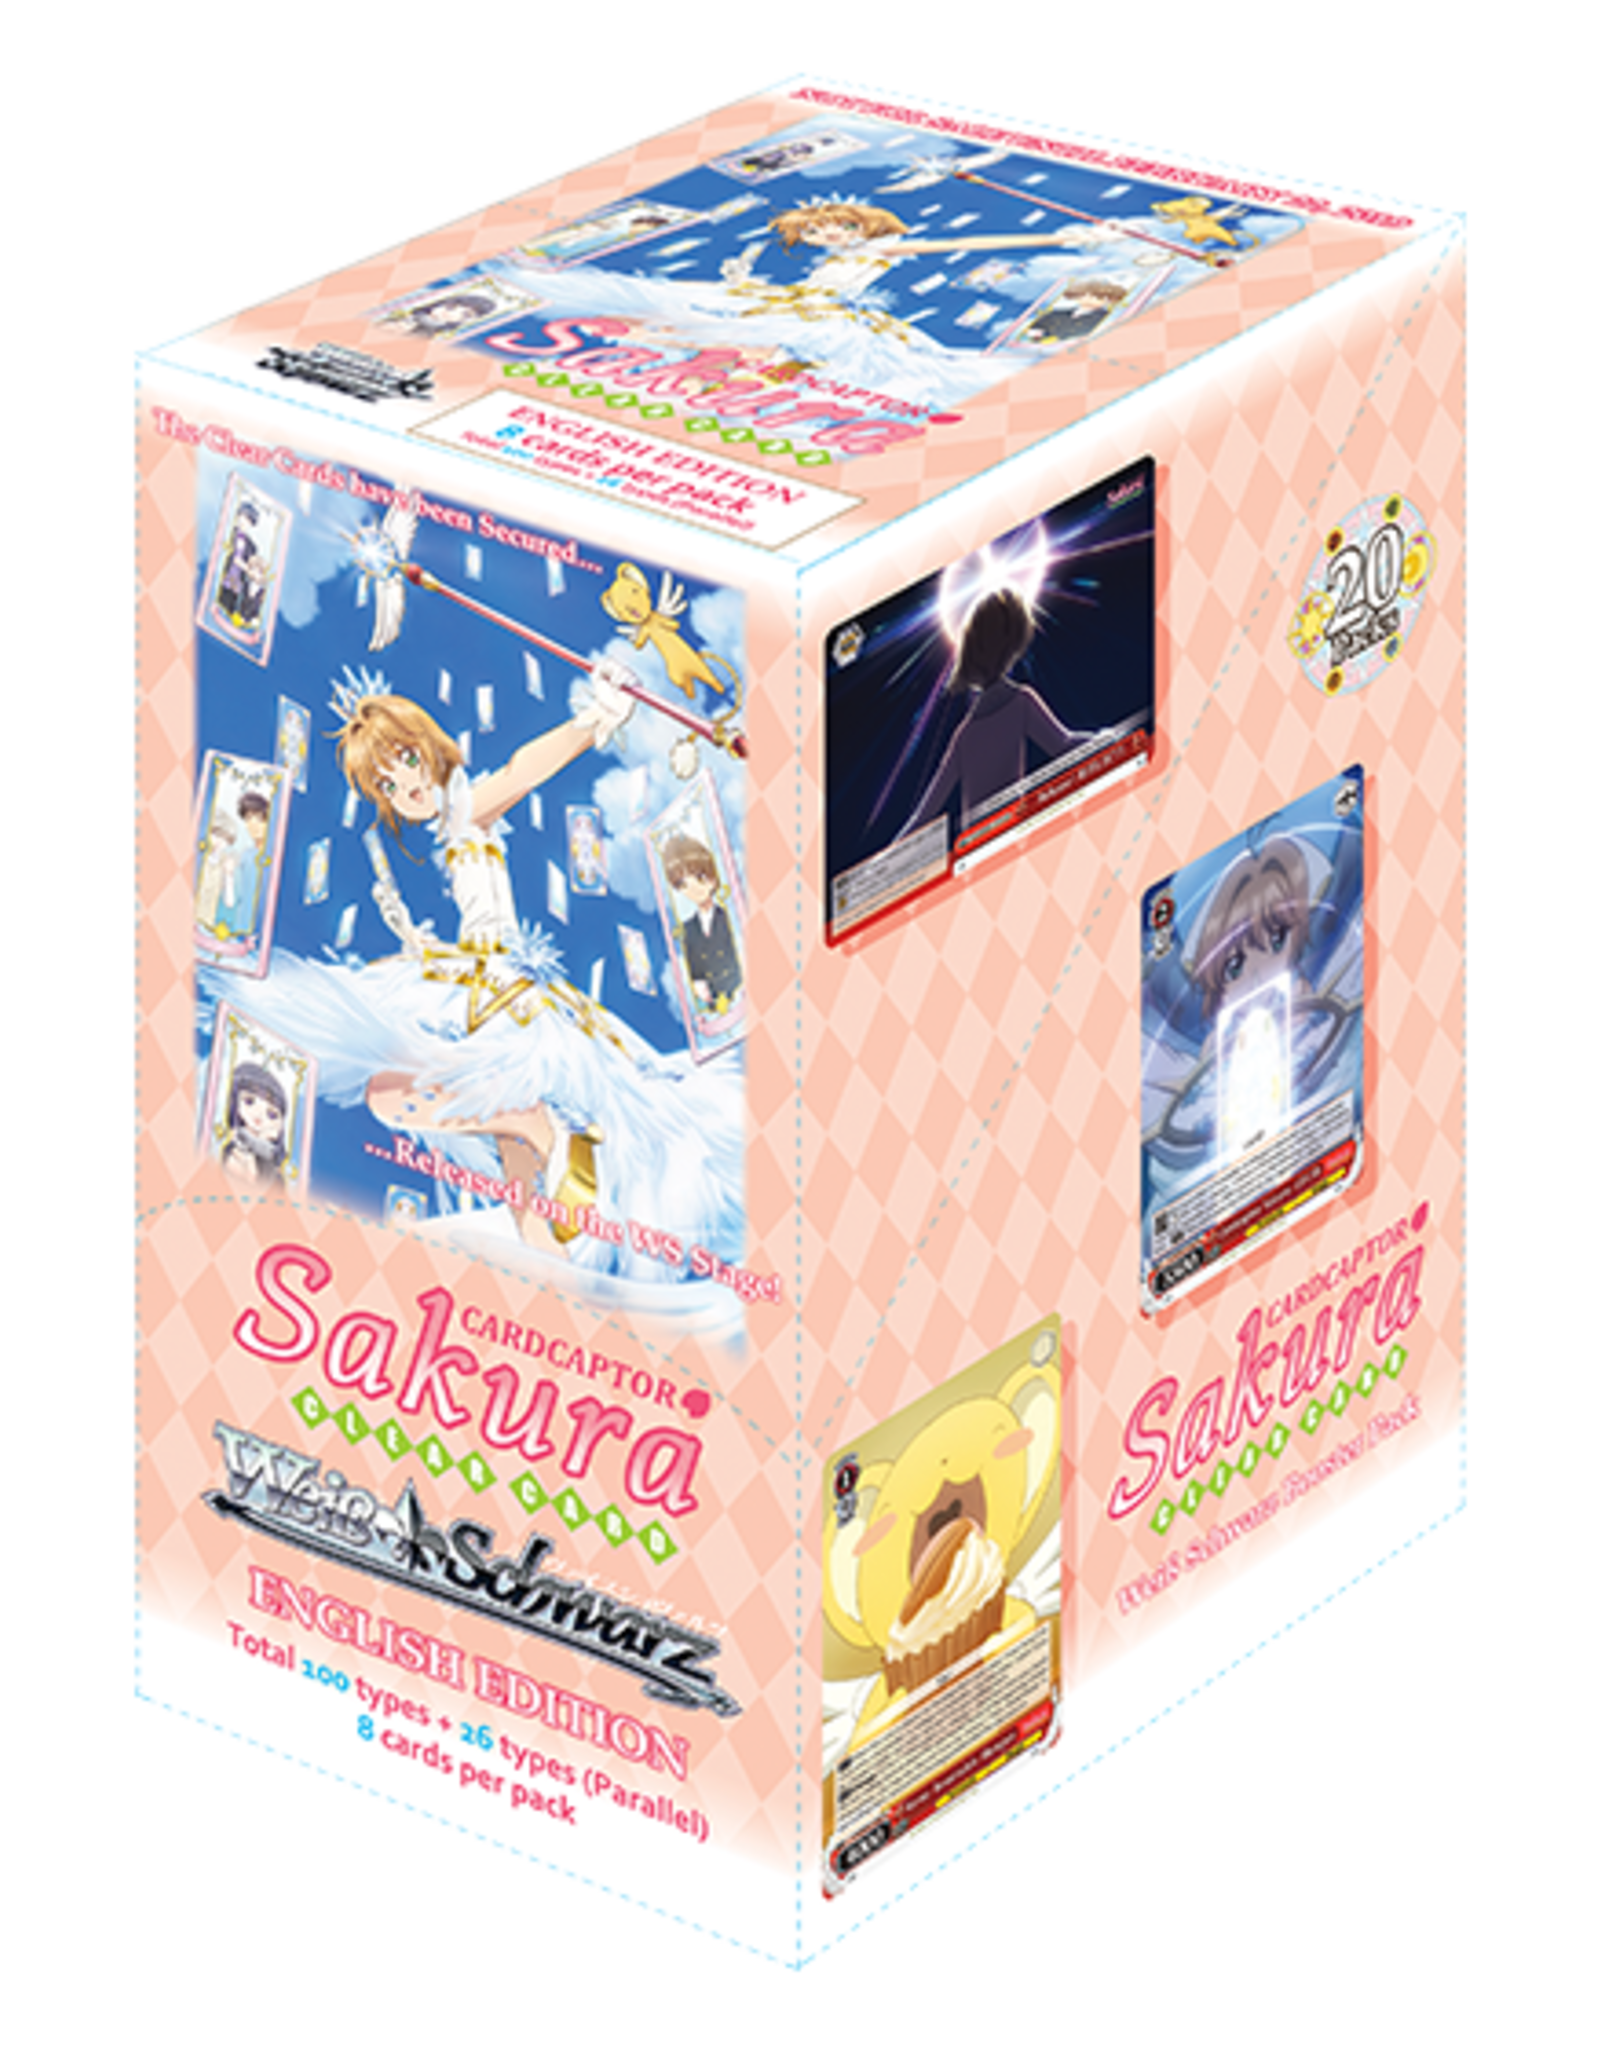 Weiss Schwarz Cardcaptor Sakura E. Booster Box